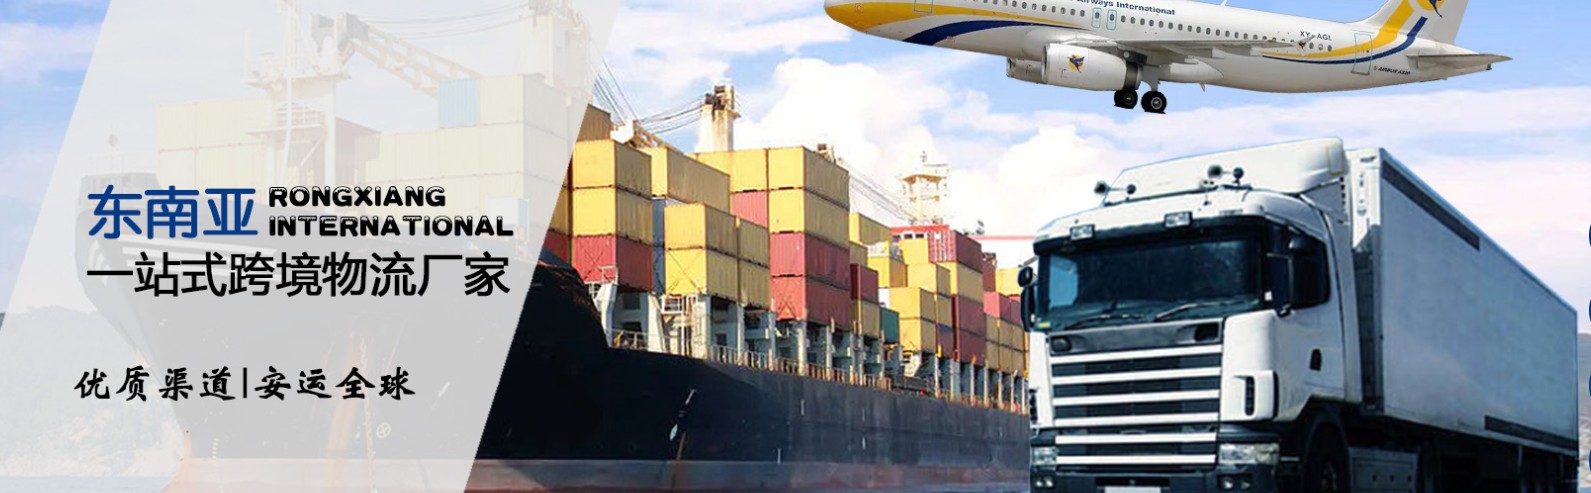 菲律宾拼箱价格 菲律宾海运代理 菲律宾散货拼箱价格 菲律宾船期查询国际物流货运代理